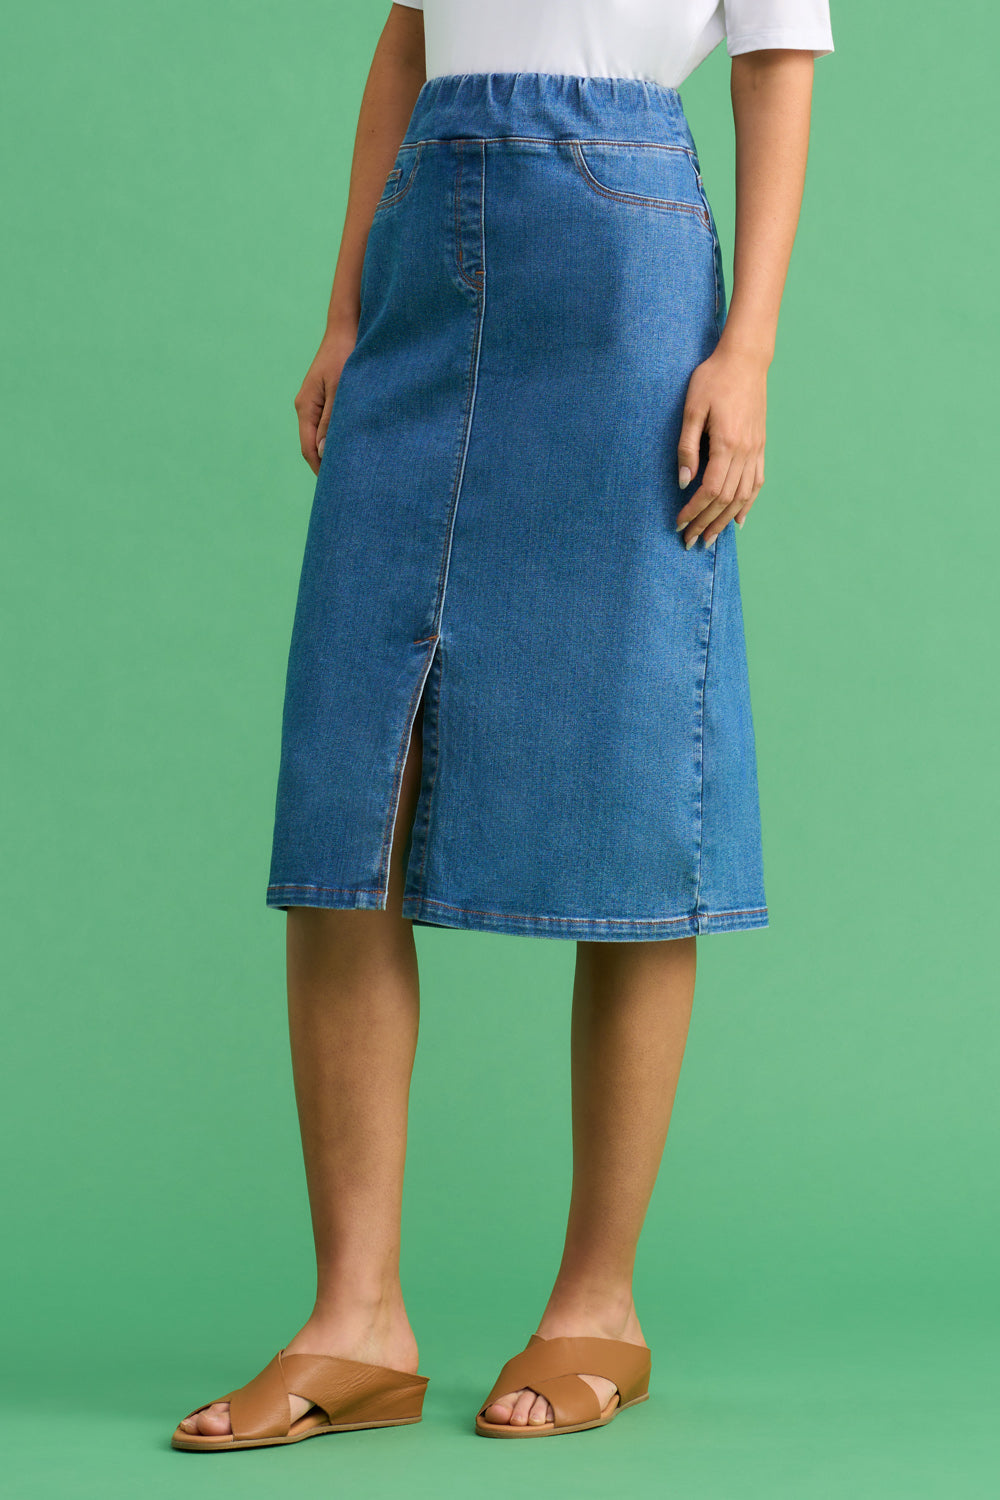 DIY Denim Skirt From Jeans - YouTube